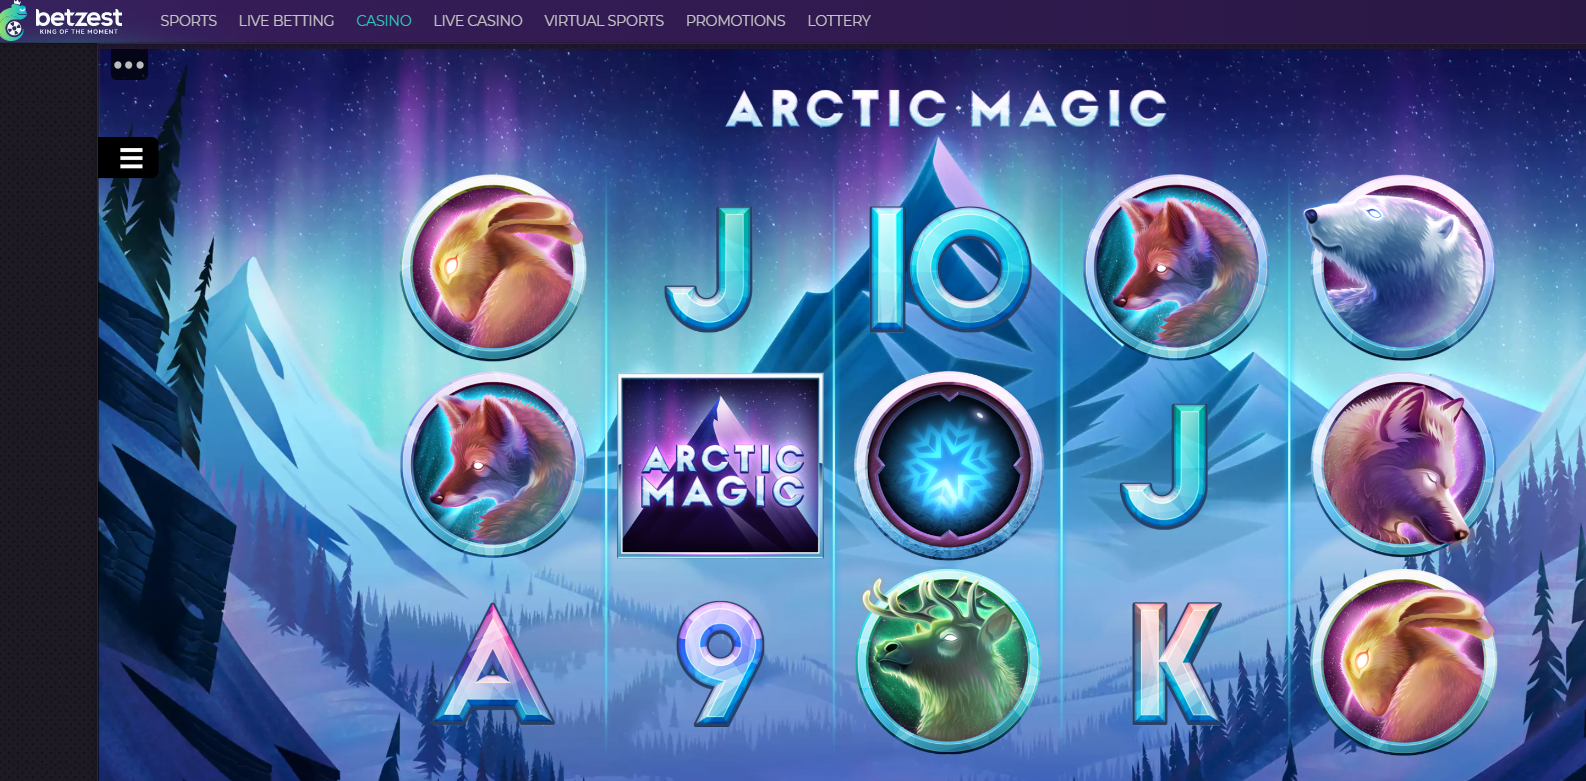 Arctic Magic Slot Review